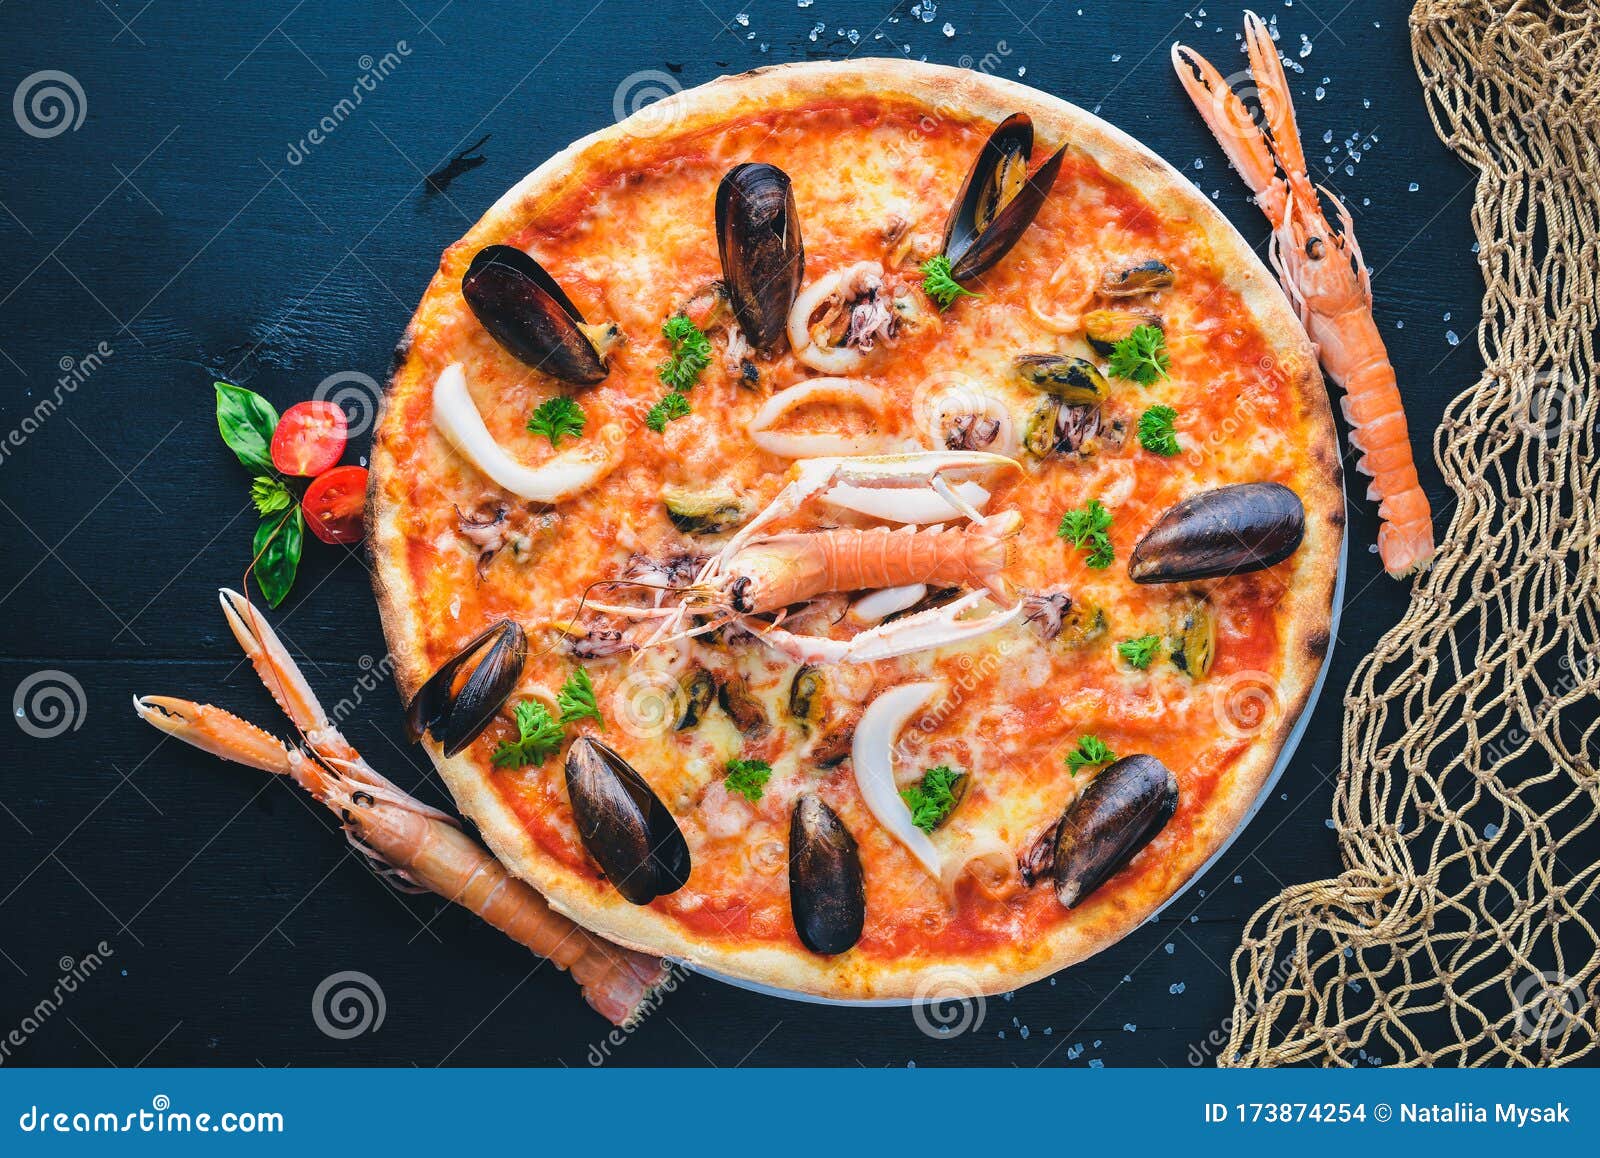 что входит в состав пиццы с морепродуктами фото 58